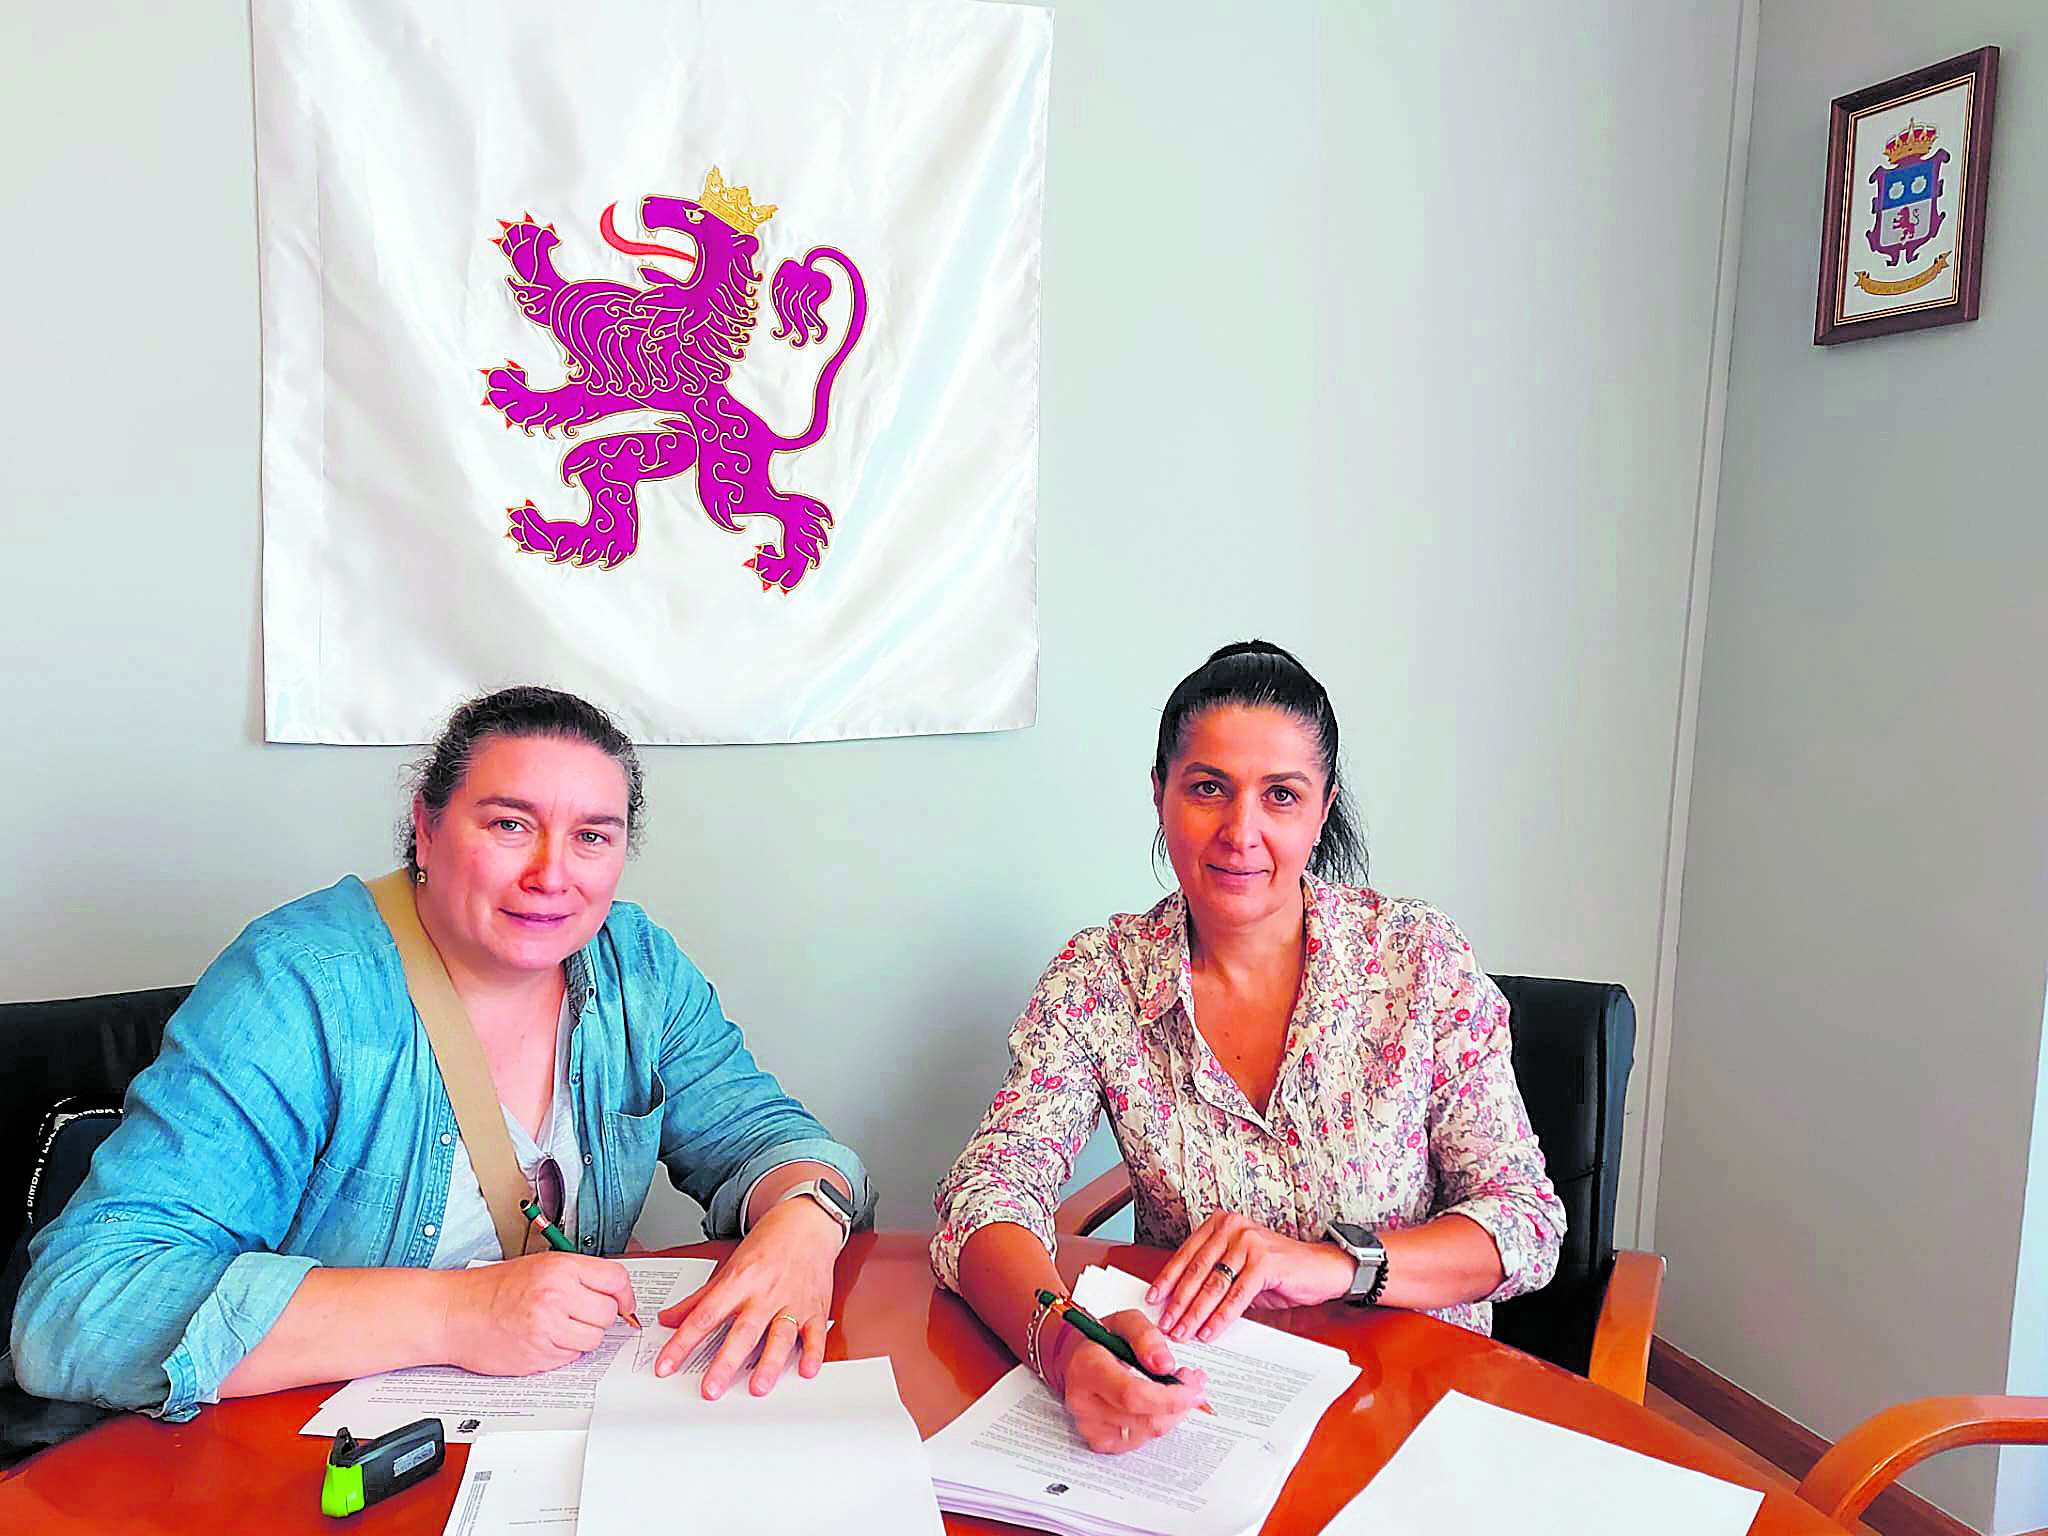 El contrato se oficializó con la firma de la alcaldesa, Ana María Fernández Caurel, y de la administradora de la compañía adjudicataria. | L.N.C.